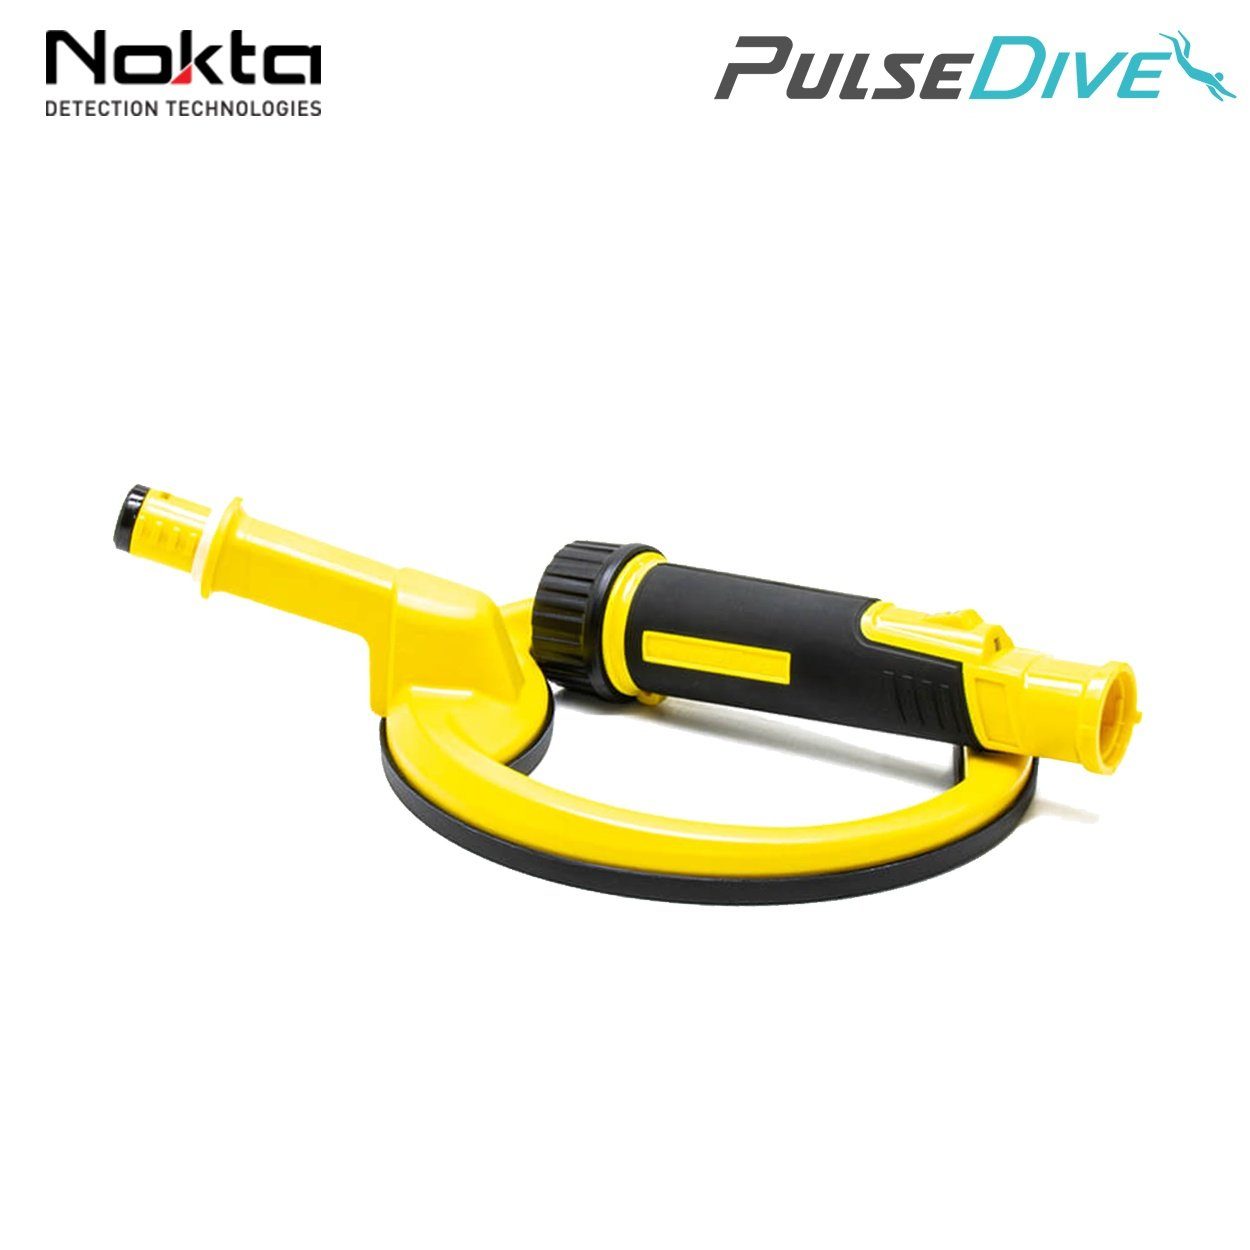 mit Nokta cm Detektor (gelb), Suchspule 20 Metalldetektor Unterwasser PulseDive